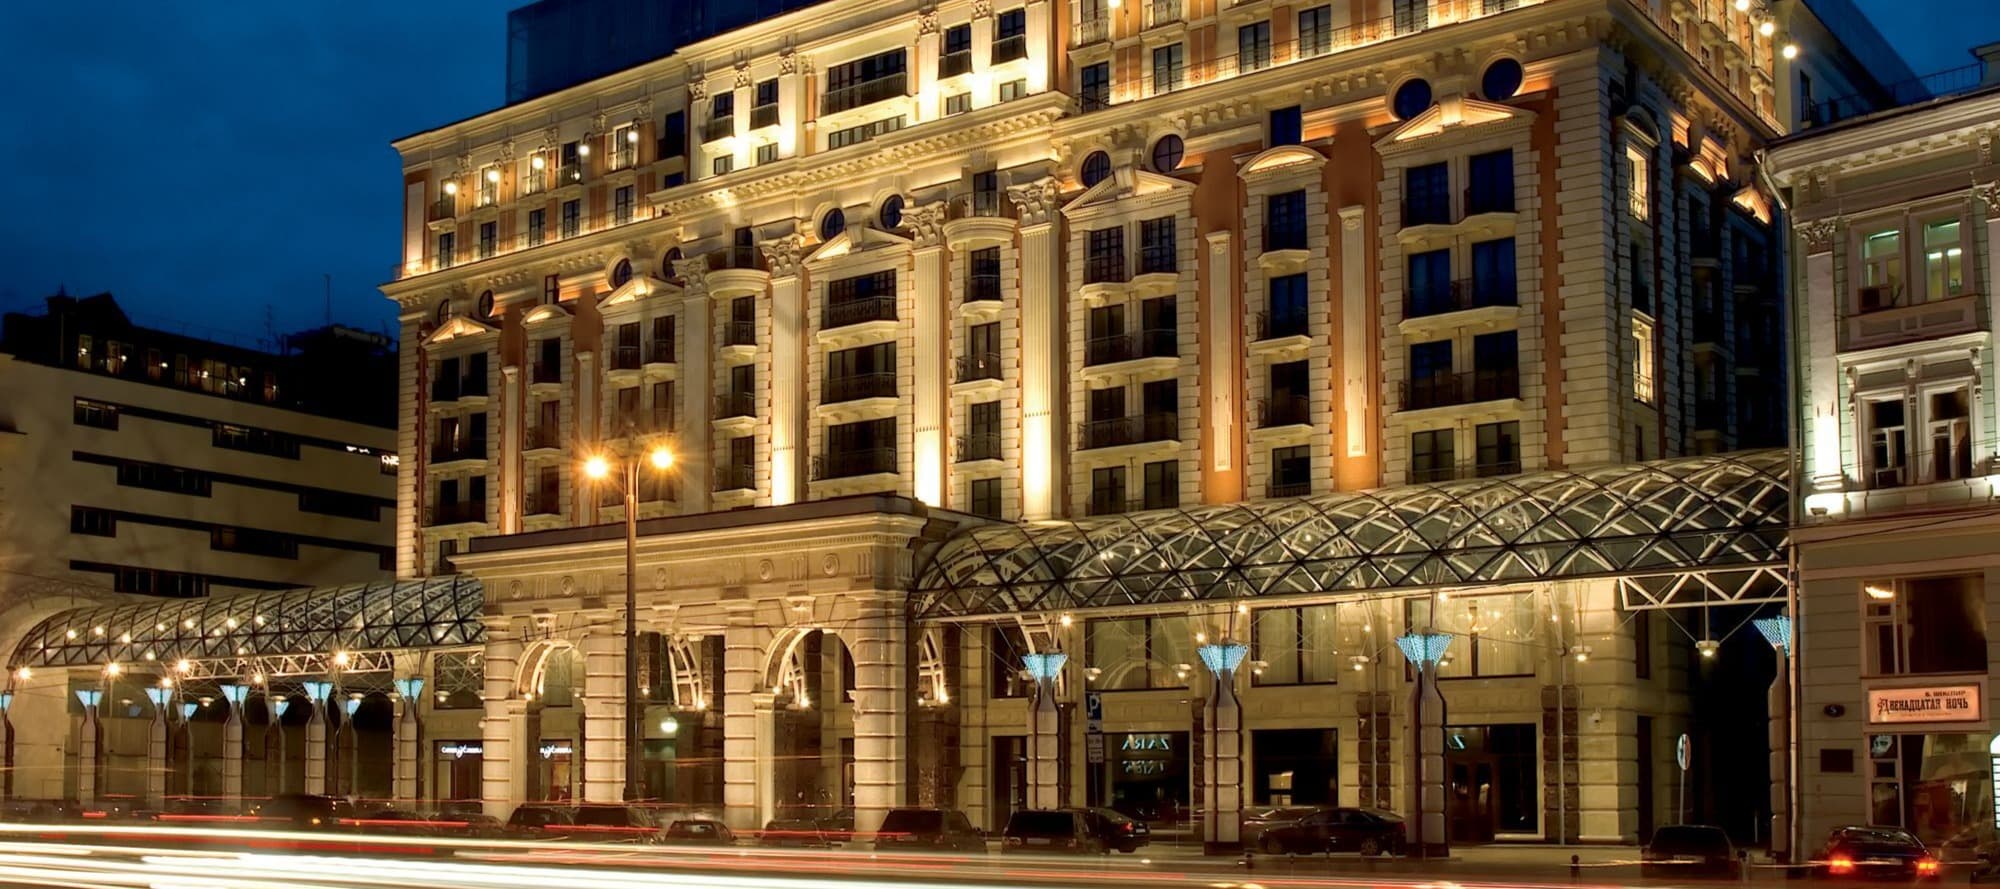 Фото новости: "Московский отель Ritz-Carlton сменил название"